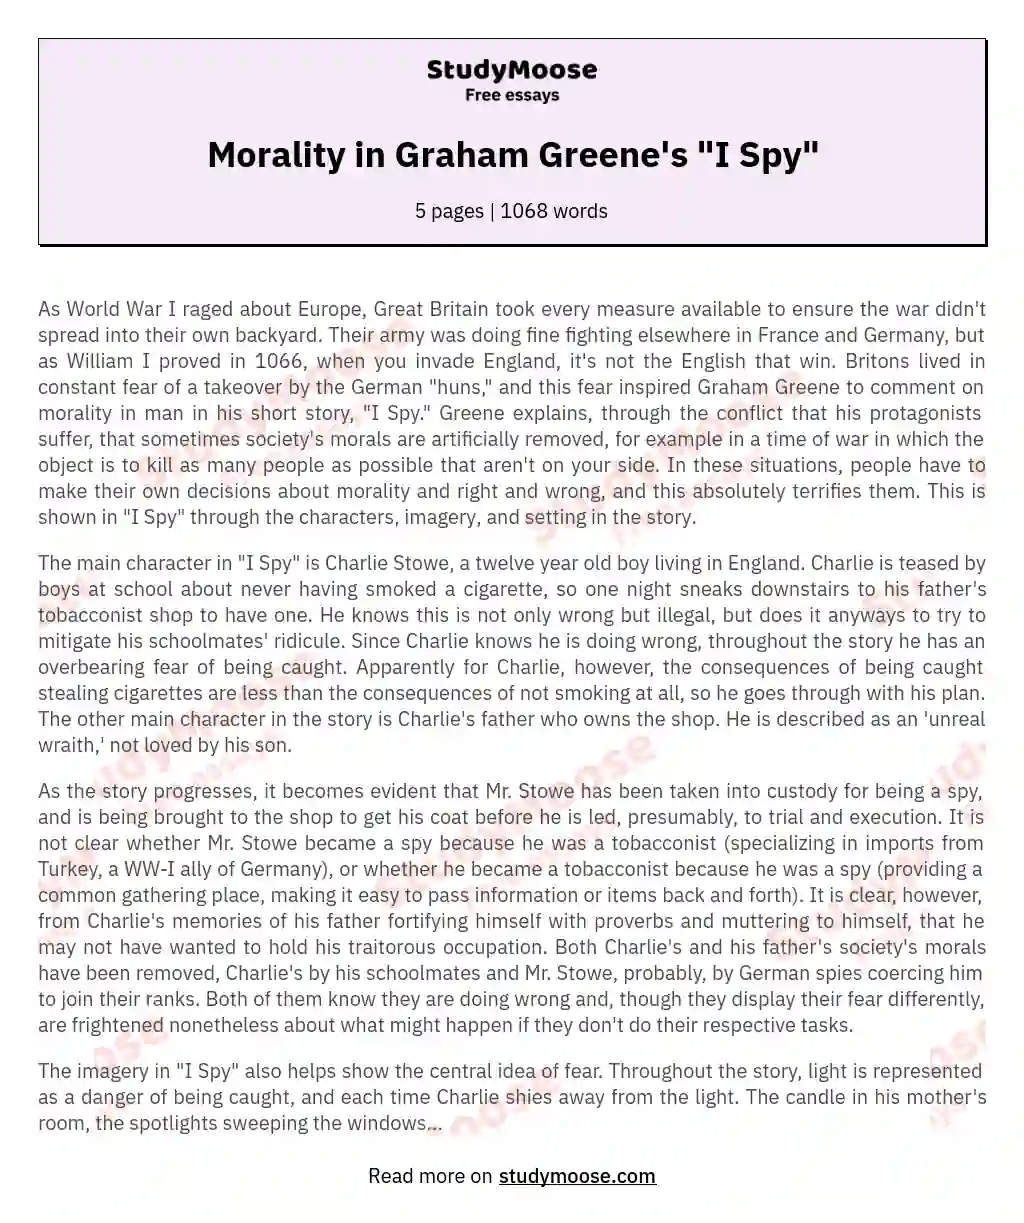 Morality in Graham Greene's "I Spy" essay